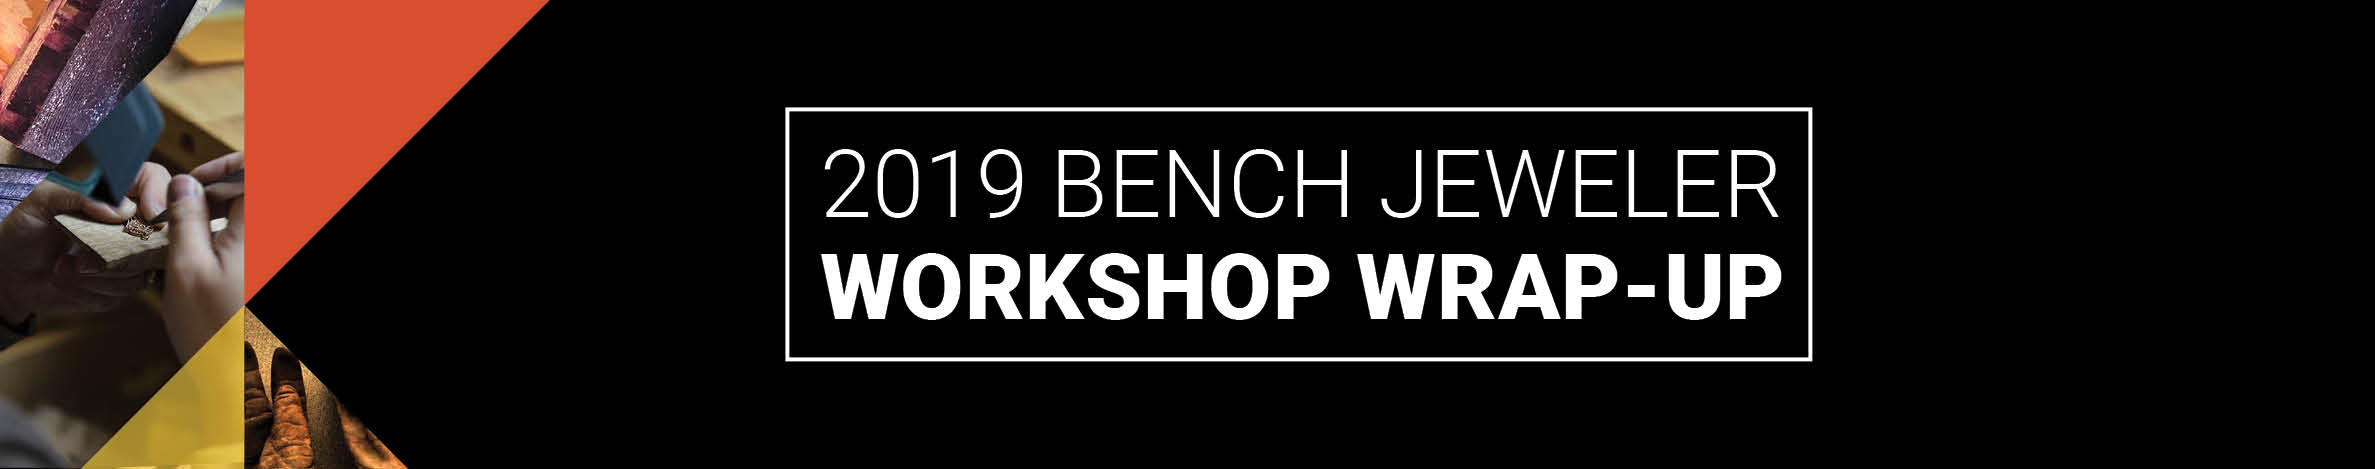 2019 Bench Jeweler Workshop Wrap Up Blog Header